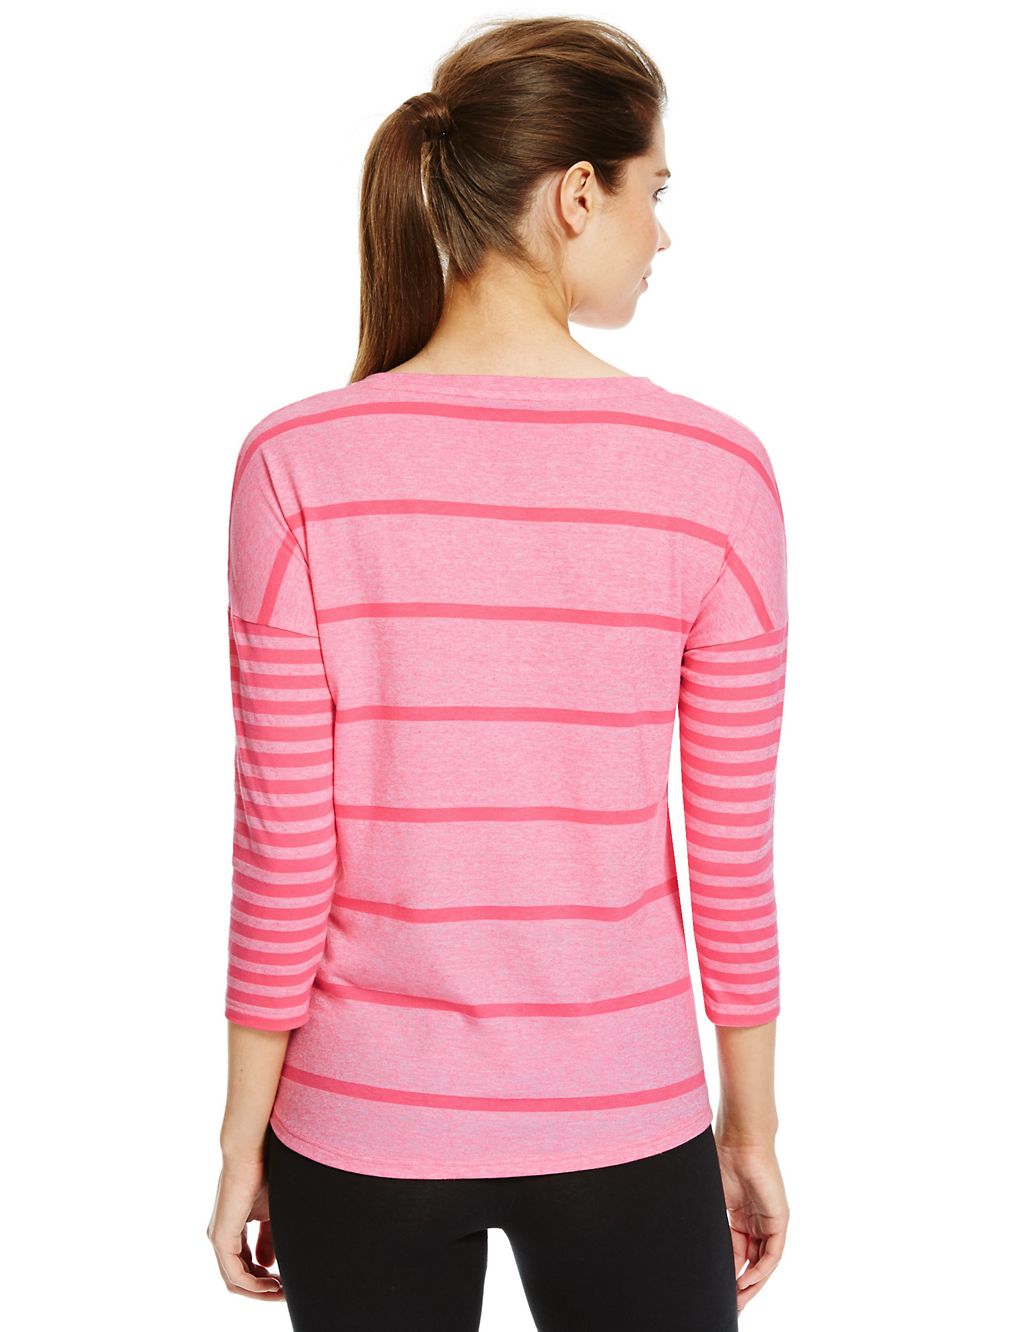 Boxy Striped T-Shirt 4 of 4